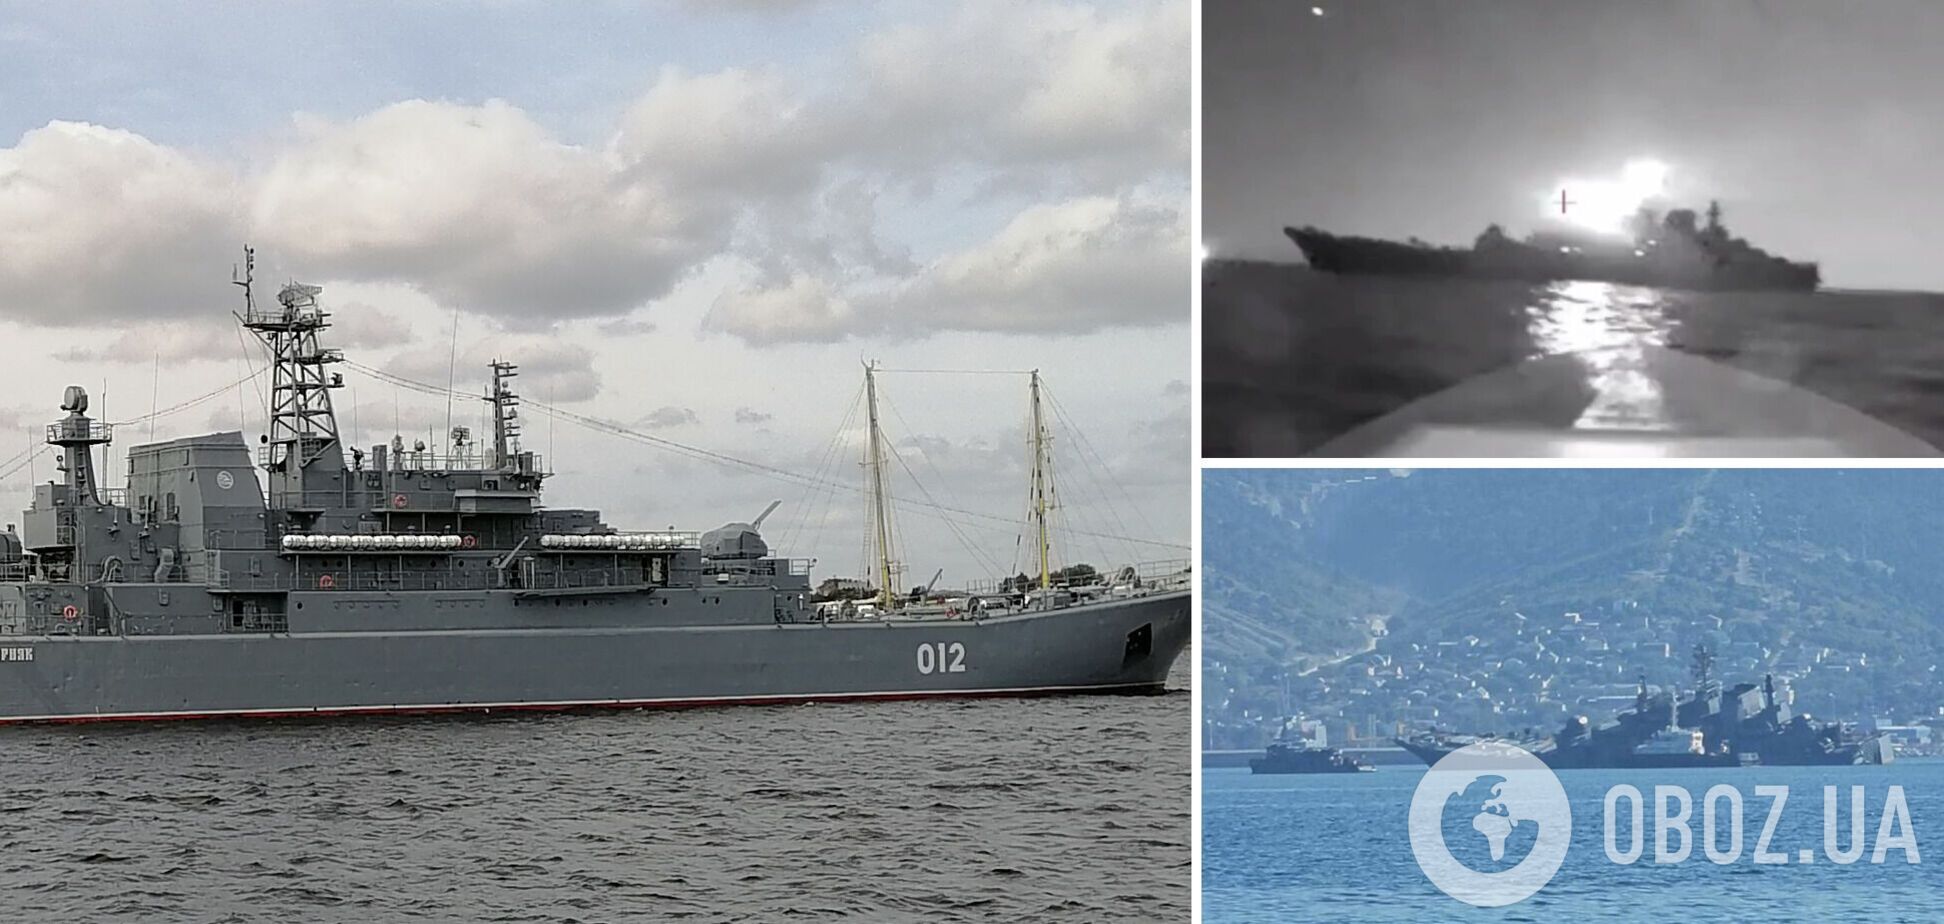 Операцию провела СБУ: момент атаки дрона на десантный корабль РФ в Новороссийске попал на видео. Эксклюзивные подробности